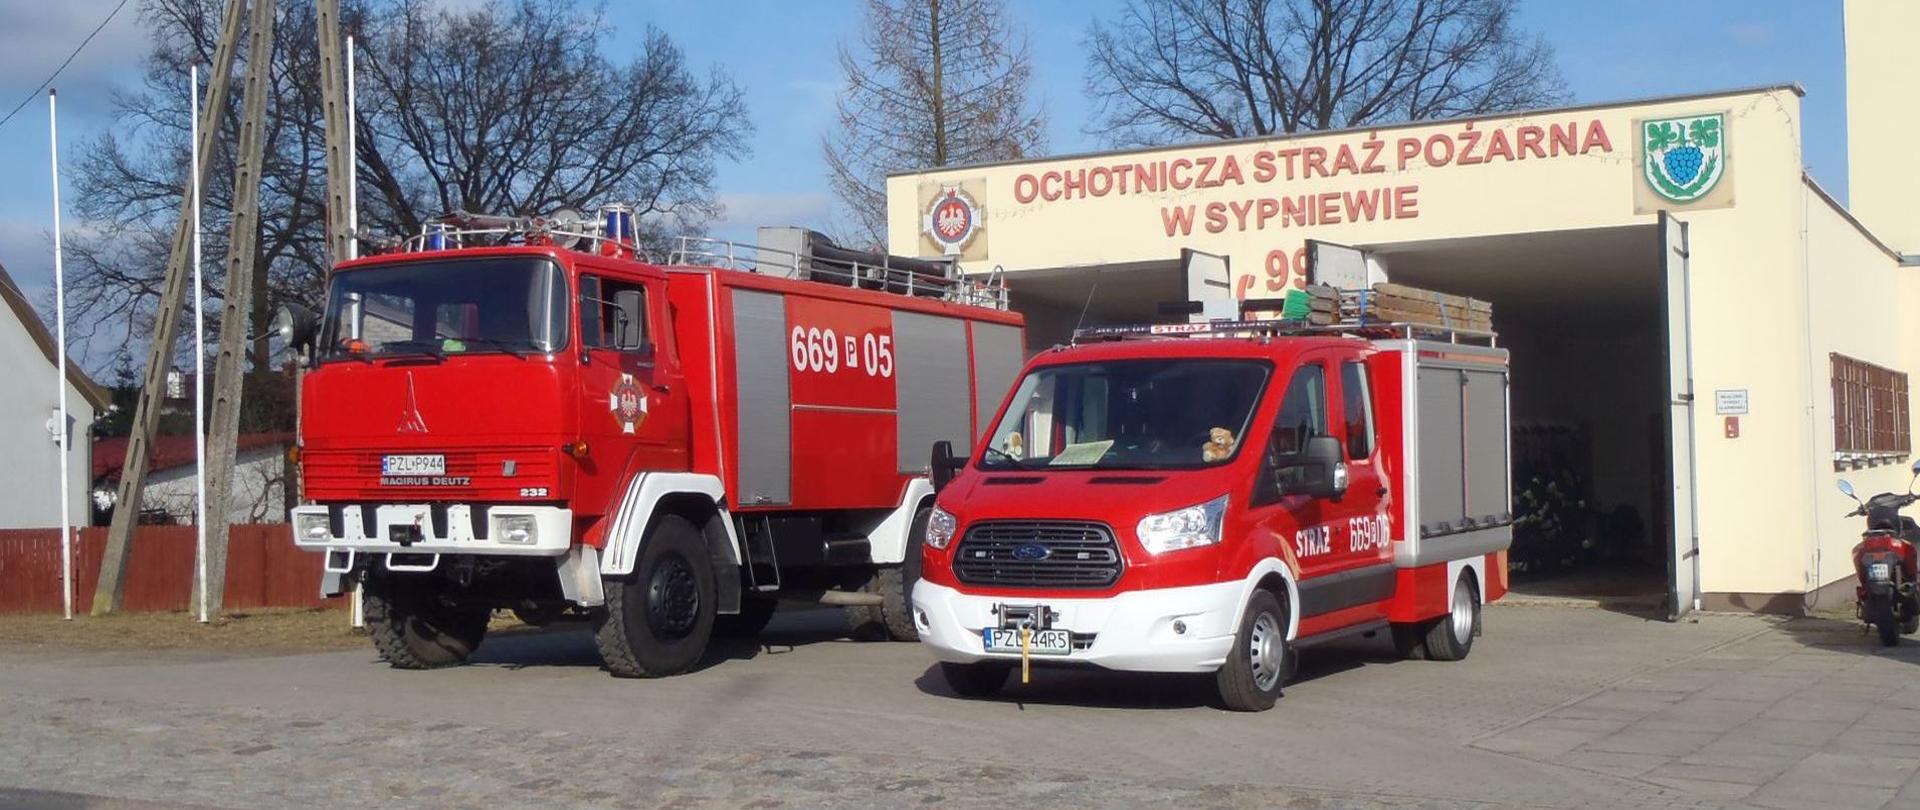 Ochotnicza Straż Pożarna w Sypniewie będąca w Krajowym Systemie Ratowniczo-Gaśniczym
Na zdjęciu plac prze remizą z pojazdami